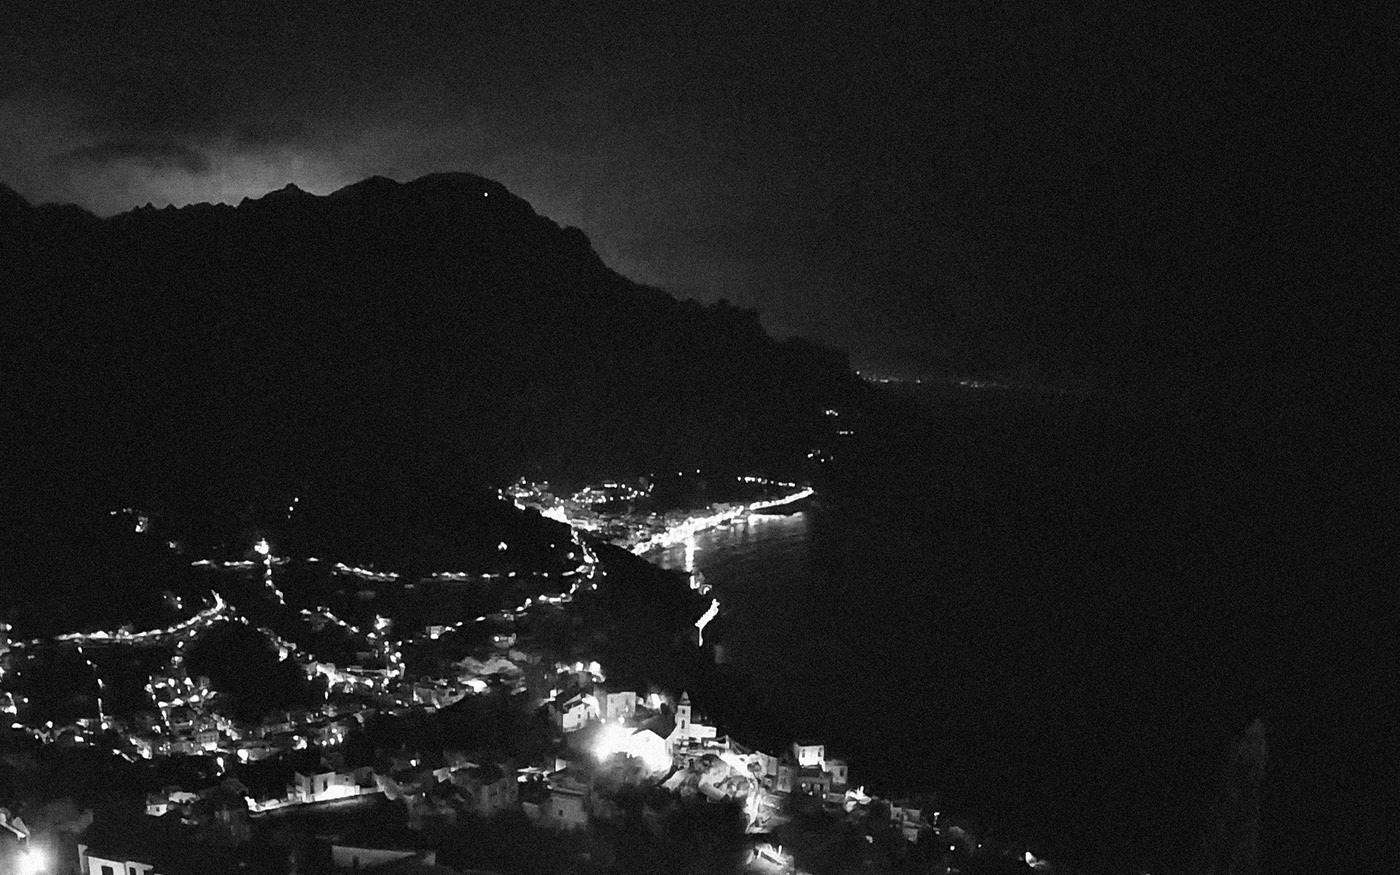 41. kép: A Földközi-tenger felett, több mint 360 méter magasságban terülő Ravello városka kiesik a tömegturizmus rohama alol, így a nyugalom és a béke szigetének nevezik. Ennek ellenére, most mégis furcsa sötétség borítja a környéket. Ravello, Salerno tartomány.